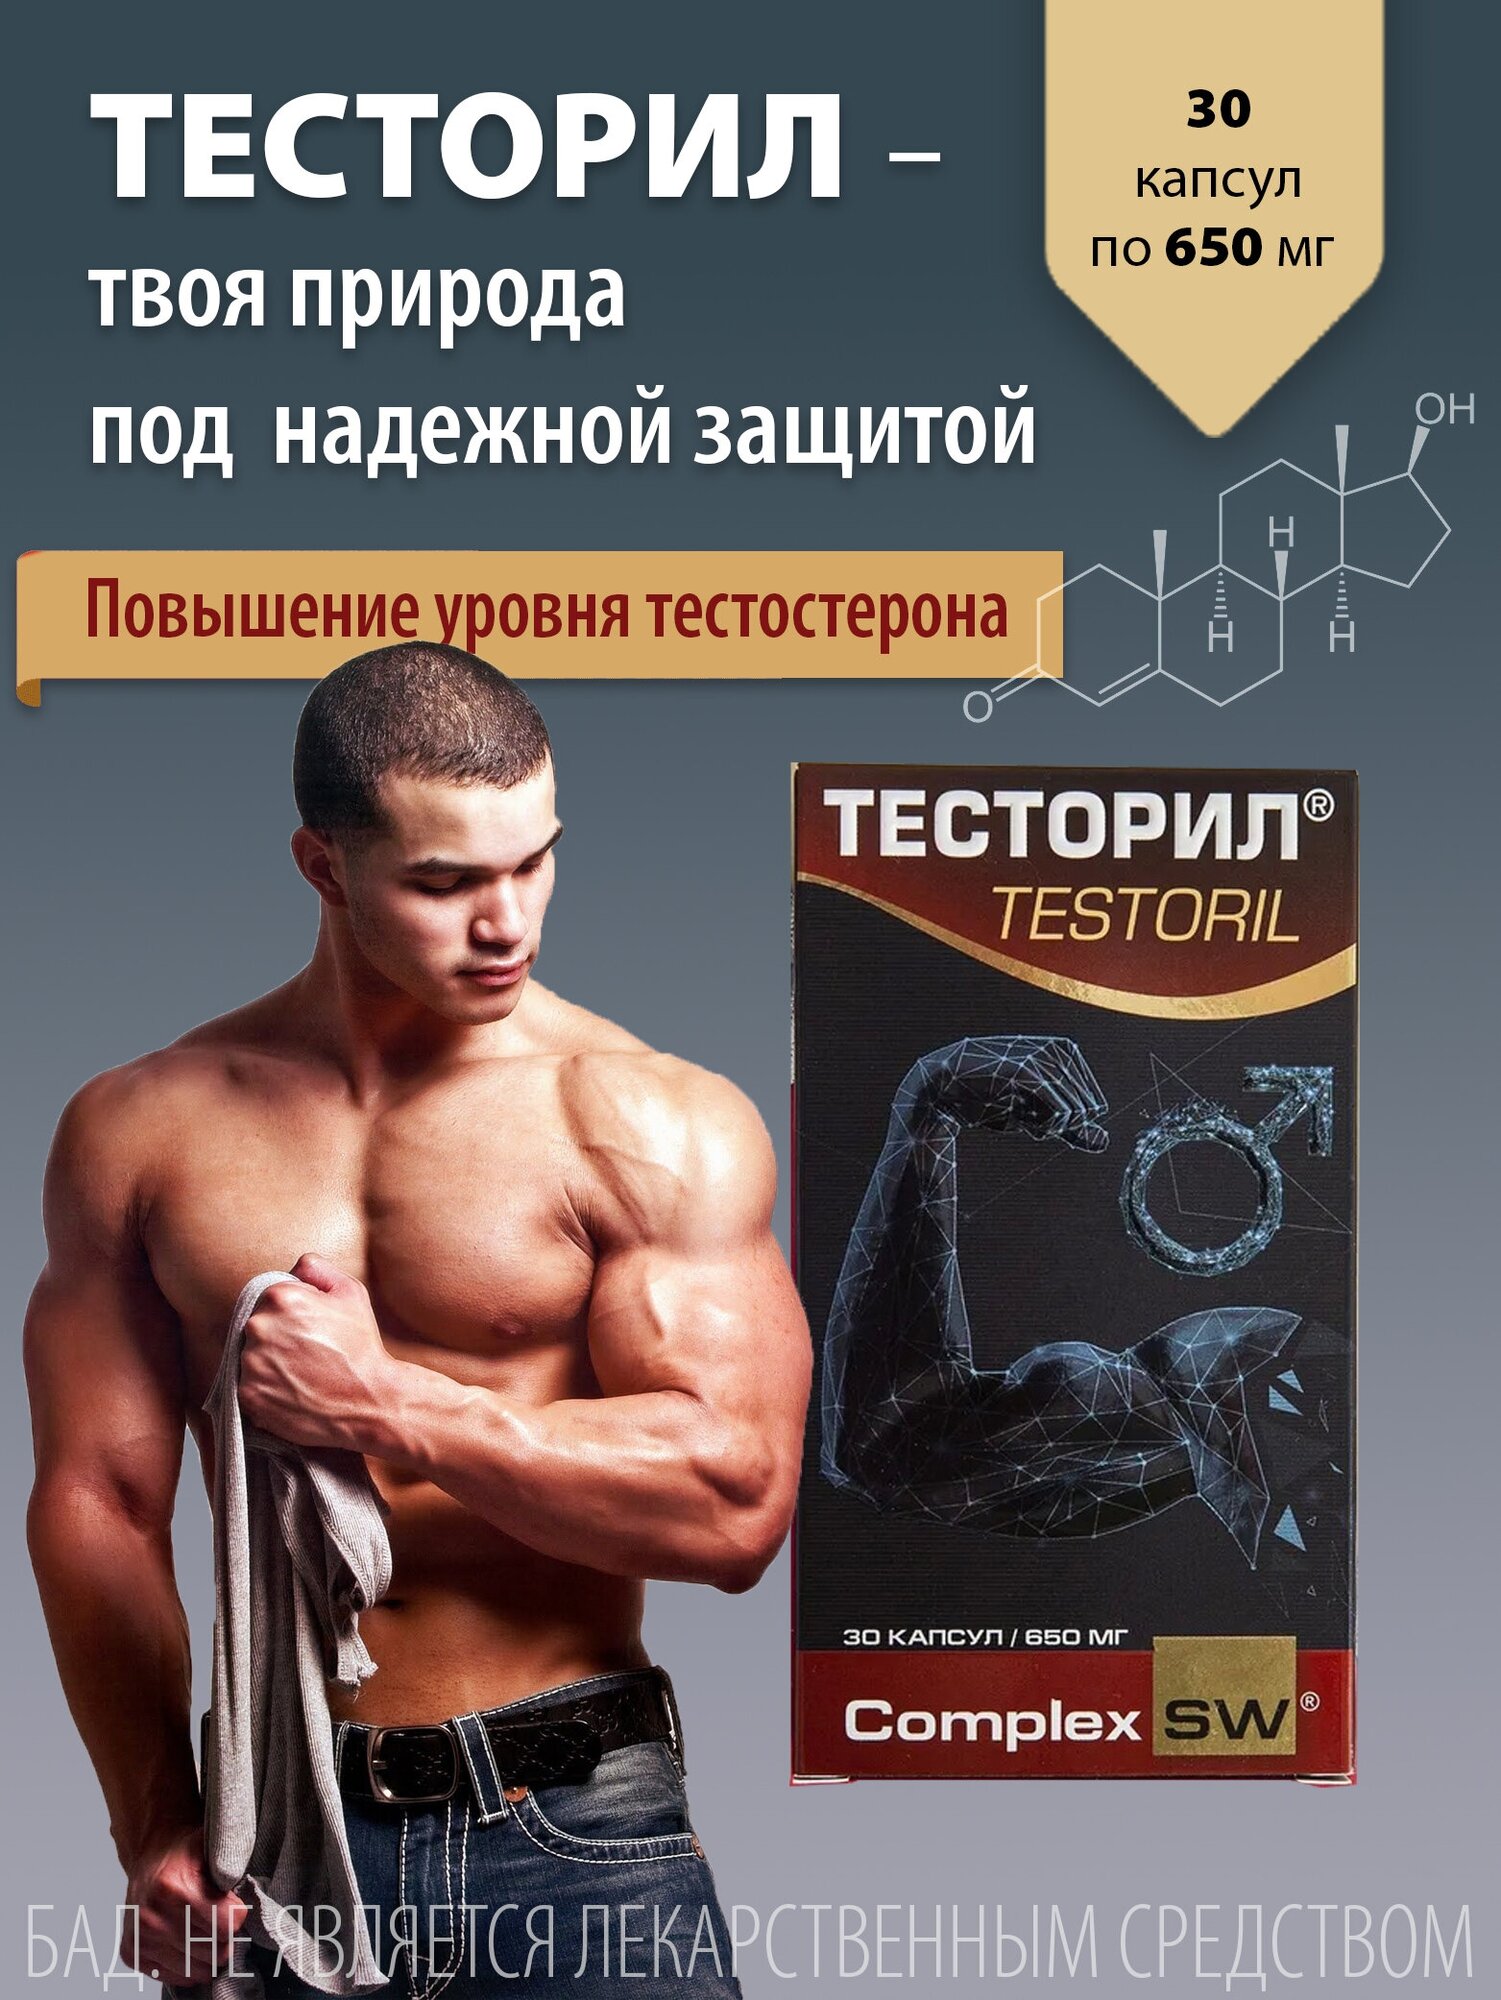 Тесторил для повышения уровня тестостерона 30 капсул 650 мг